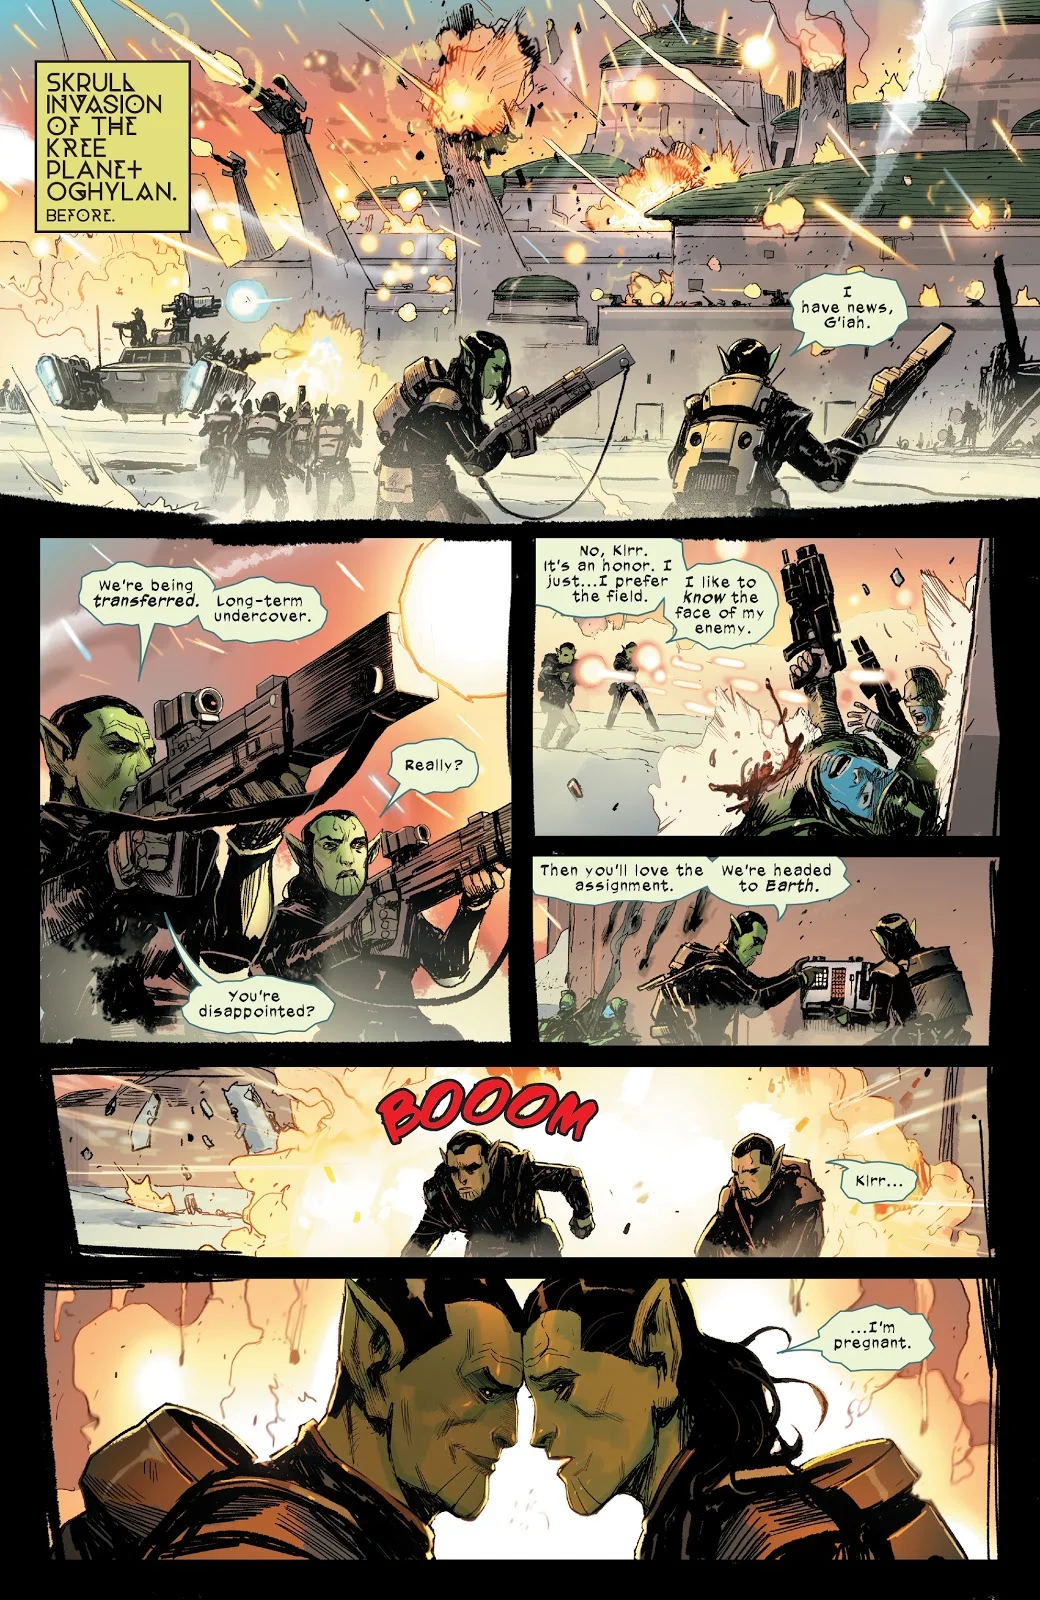 Зачем читать Meet the Skrulls? История о семье пришельцев-шпионов, скрывающихся на Земле - фото 3